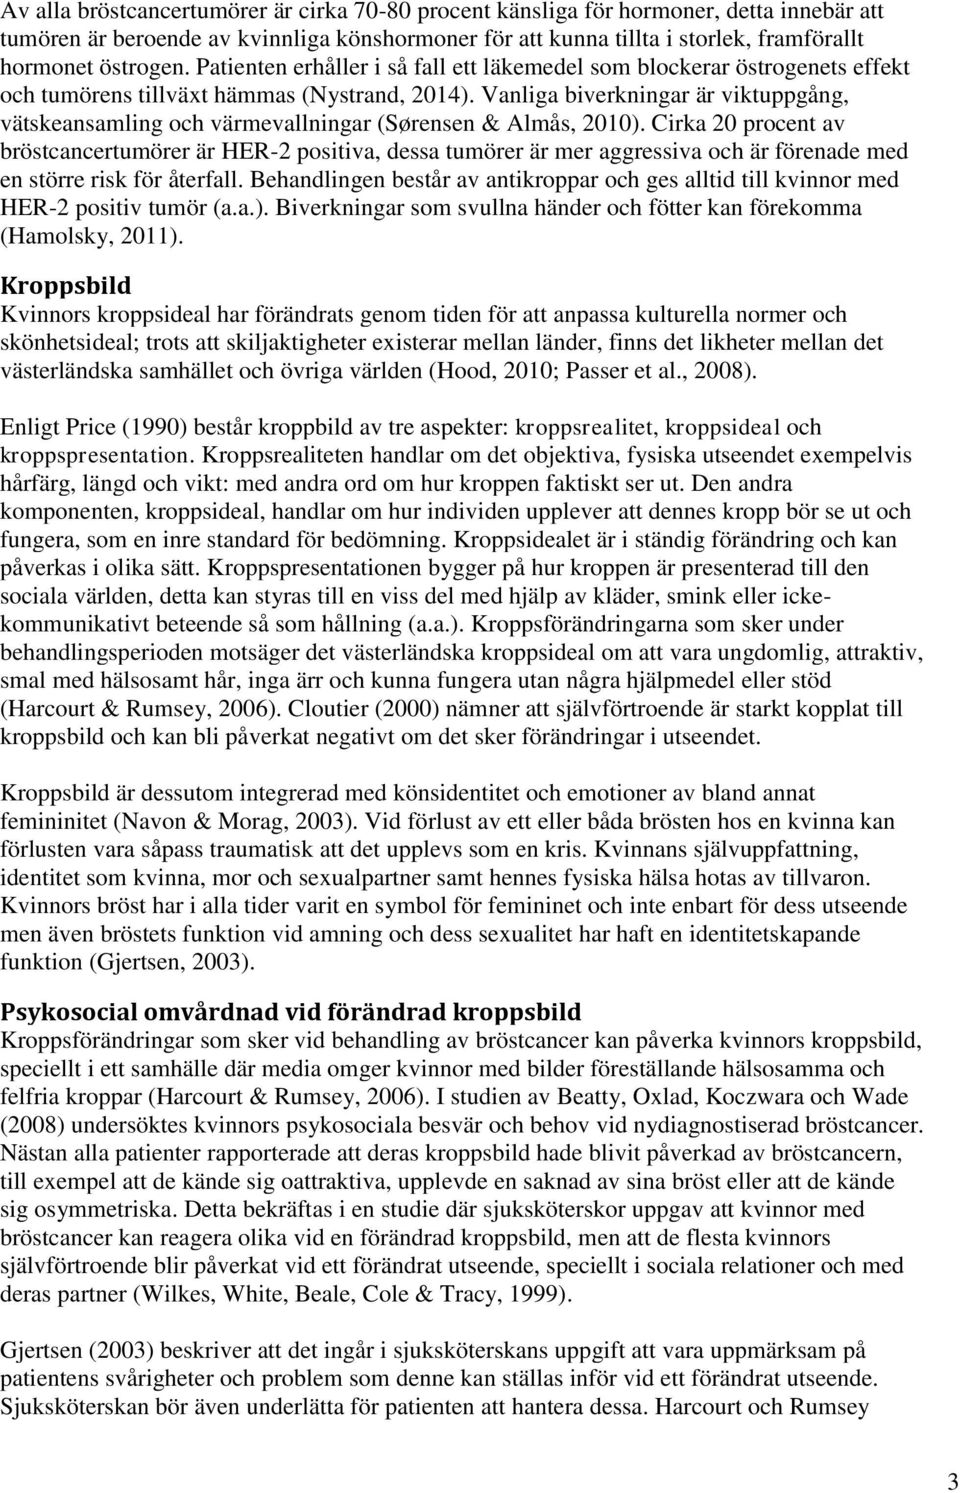 Vanliga biverkningar är viktuppgång, vätskeansamling och värmevallningar (Sørensen & Almås, 2010).